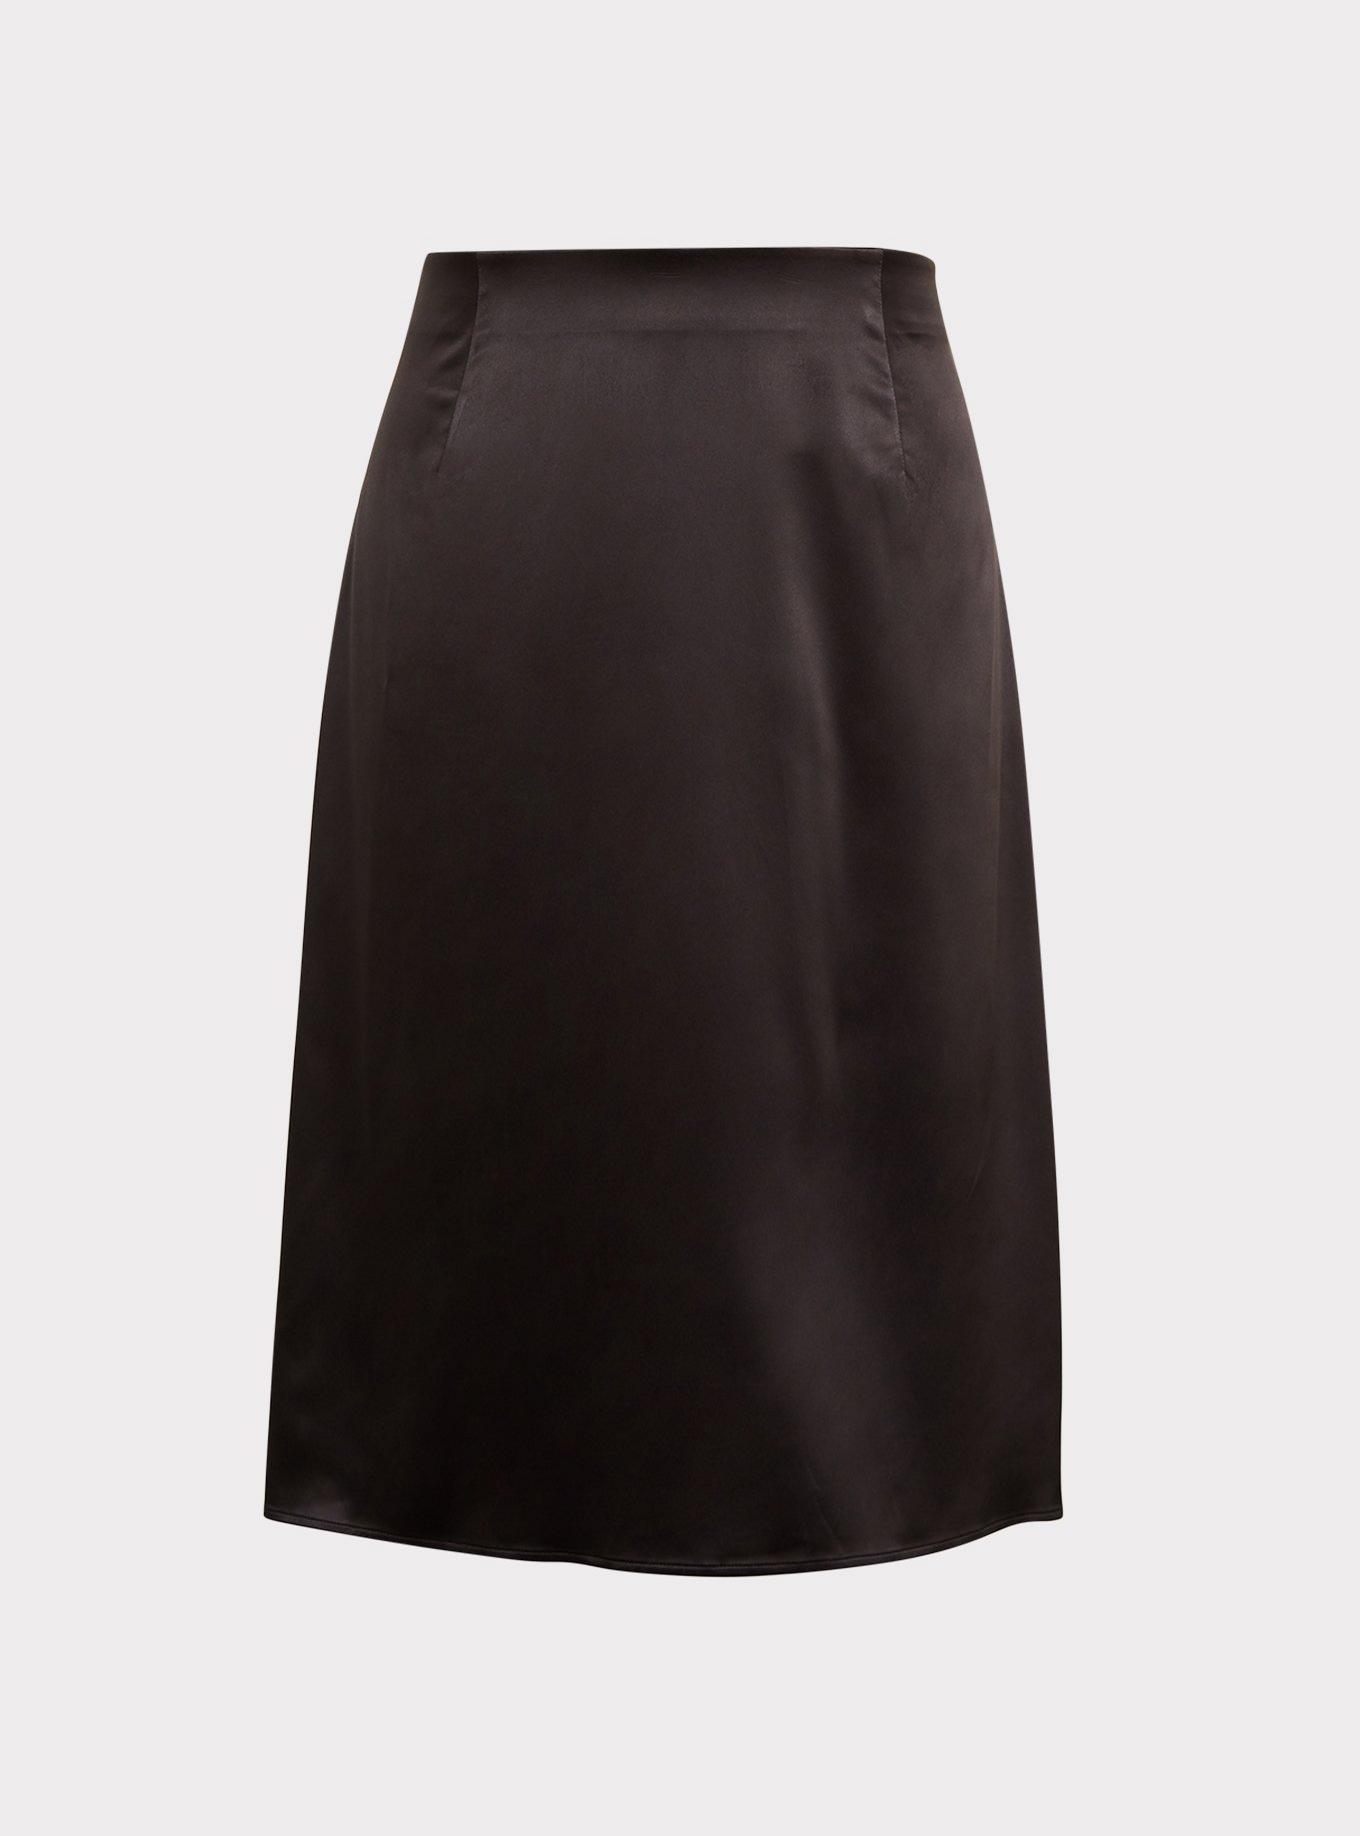 Plus Size - Black Satin Slip Skirt - Torrid